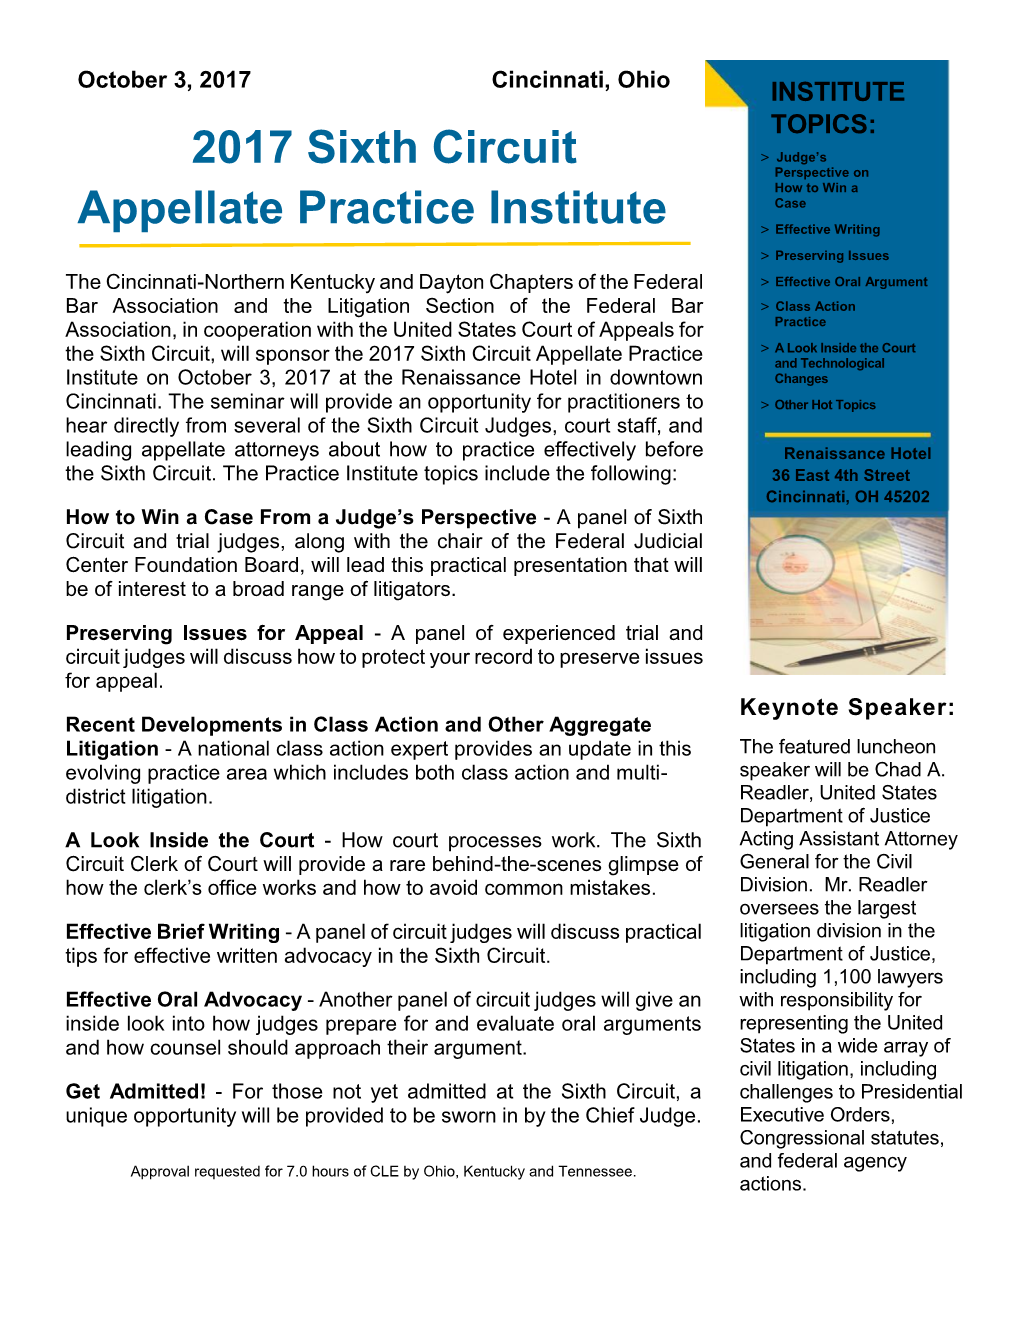 2017 Sixth Circuit Appellate Practice Institute